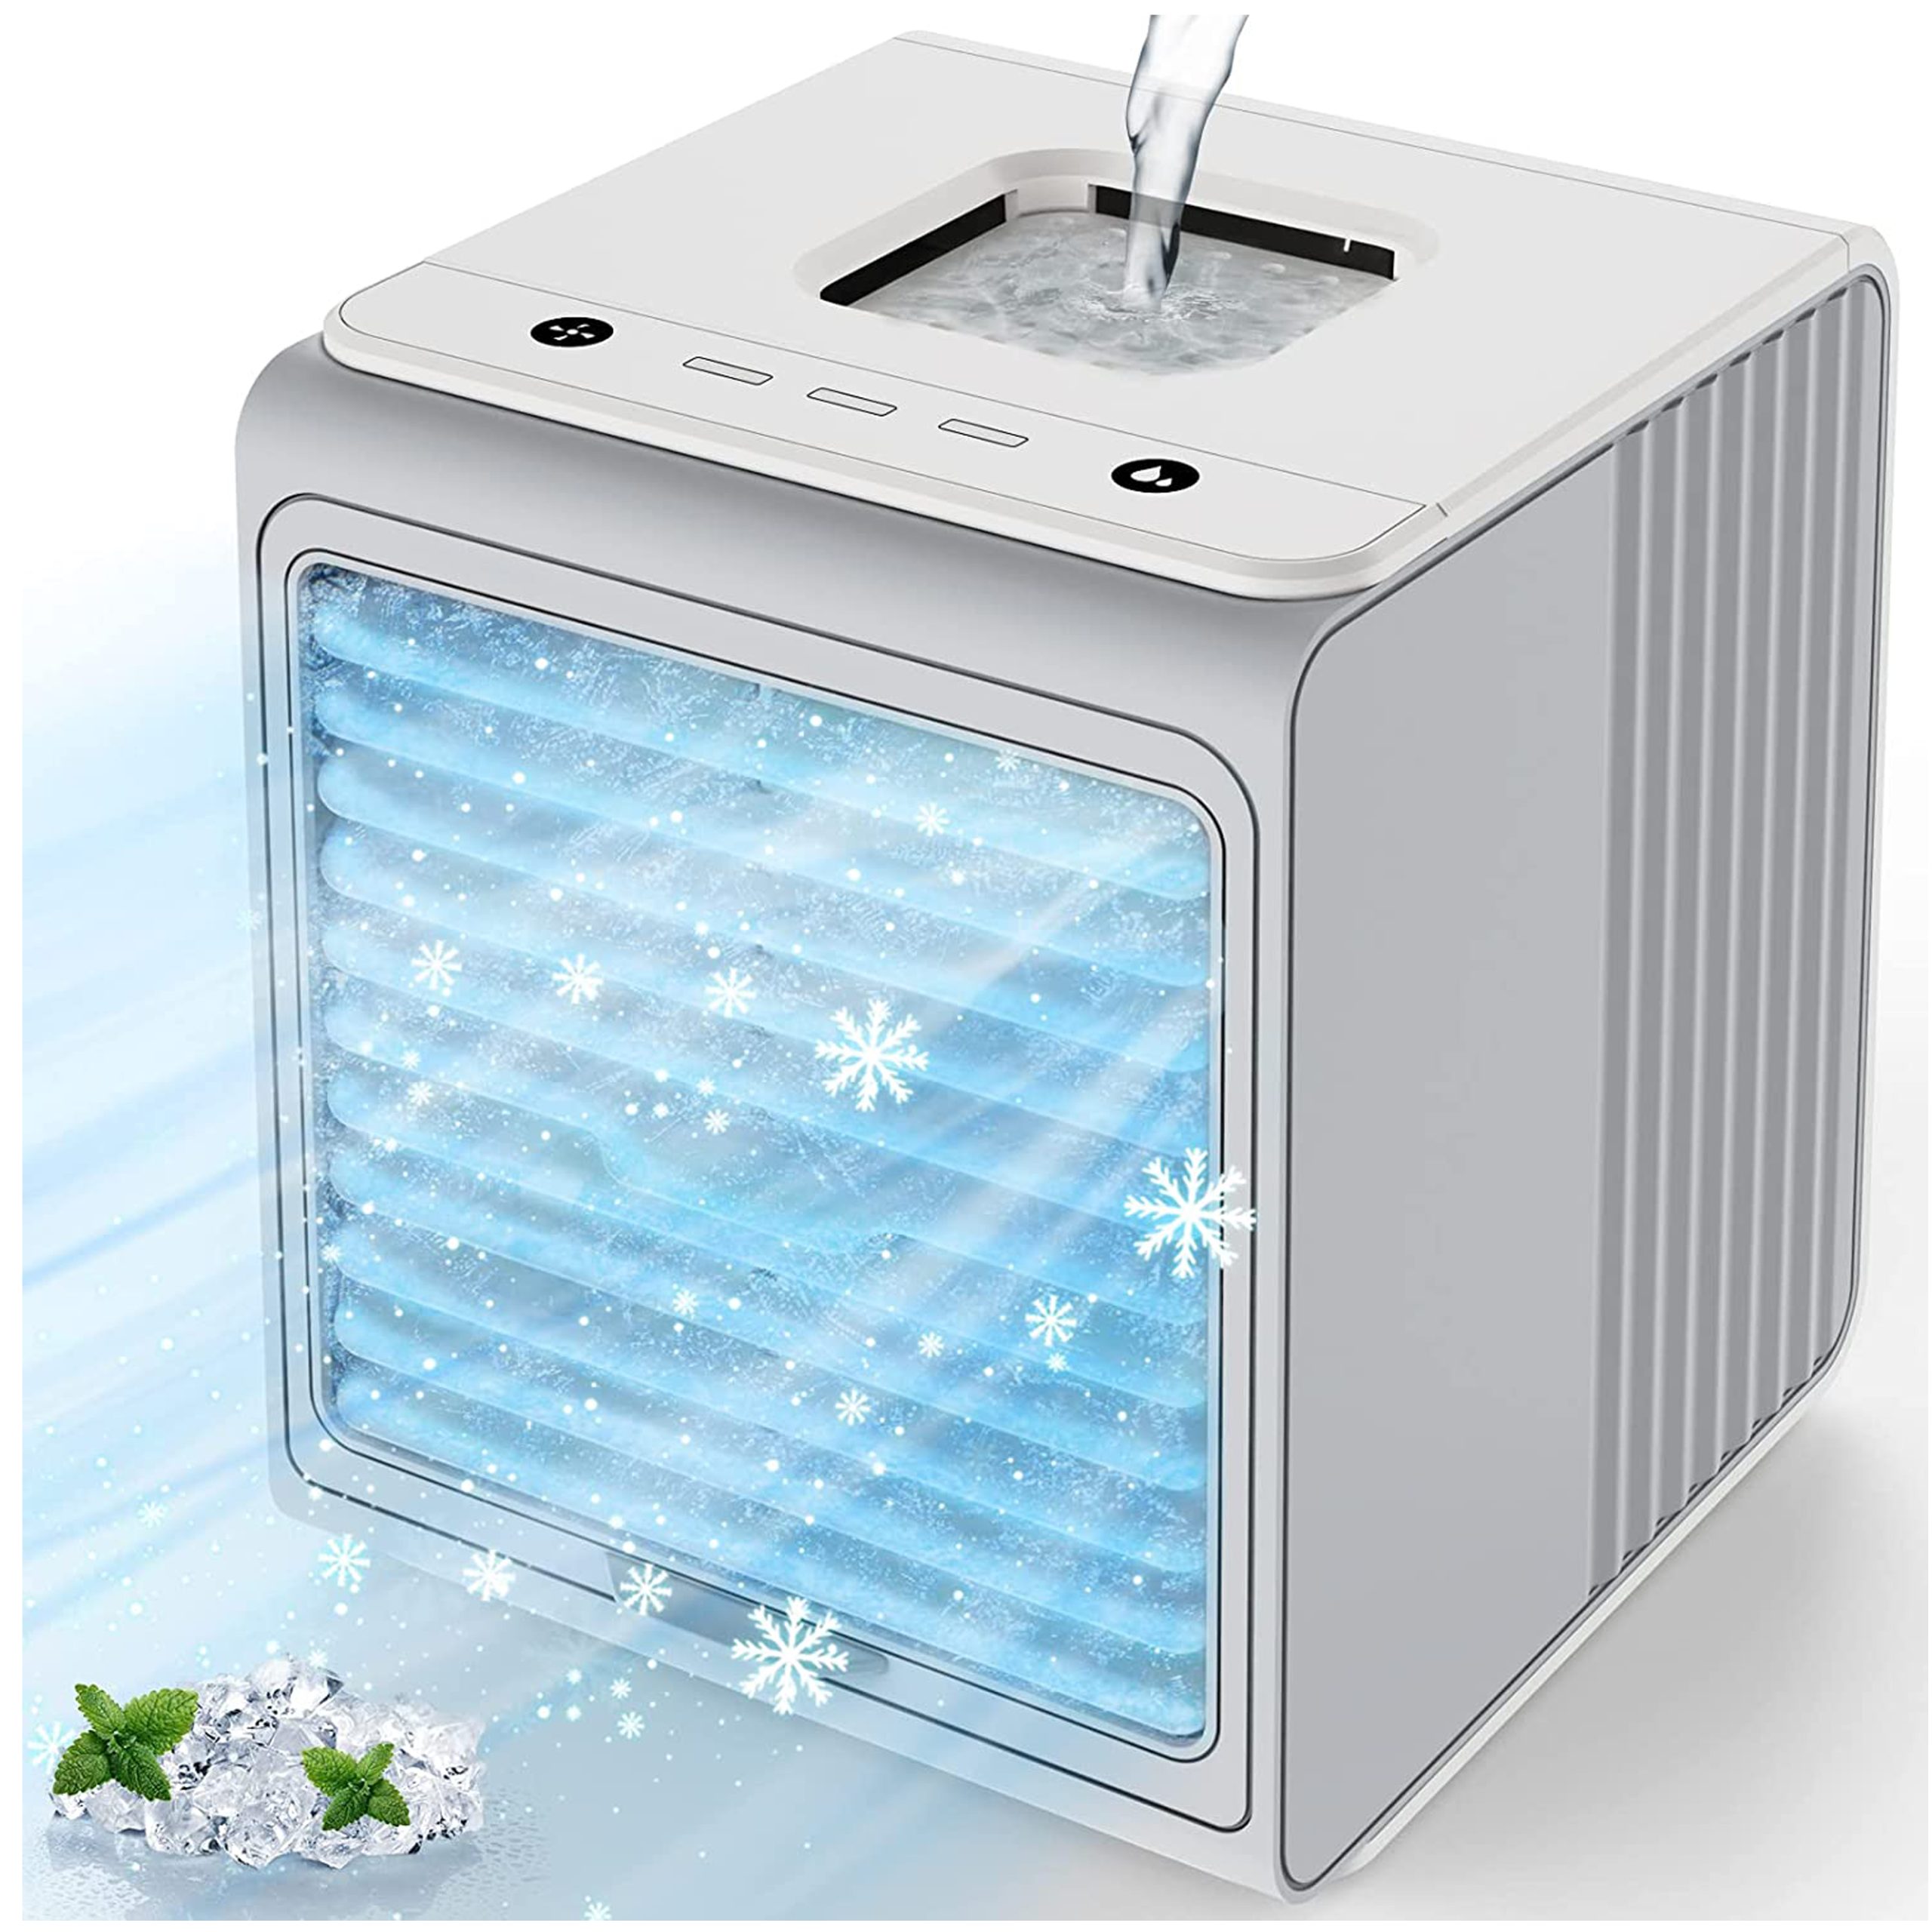 کولر مینی رطوبت ساز با تهویه مطبوع و قابل حمل Mini Air Conditioner, Portable Air Conditioners Humidifier w/3 Speeds